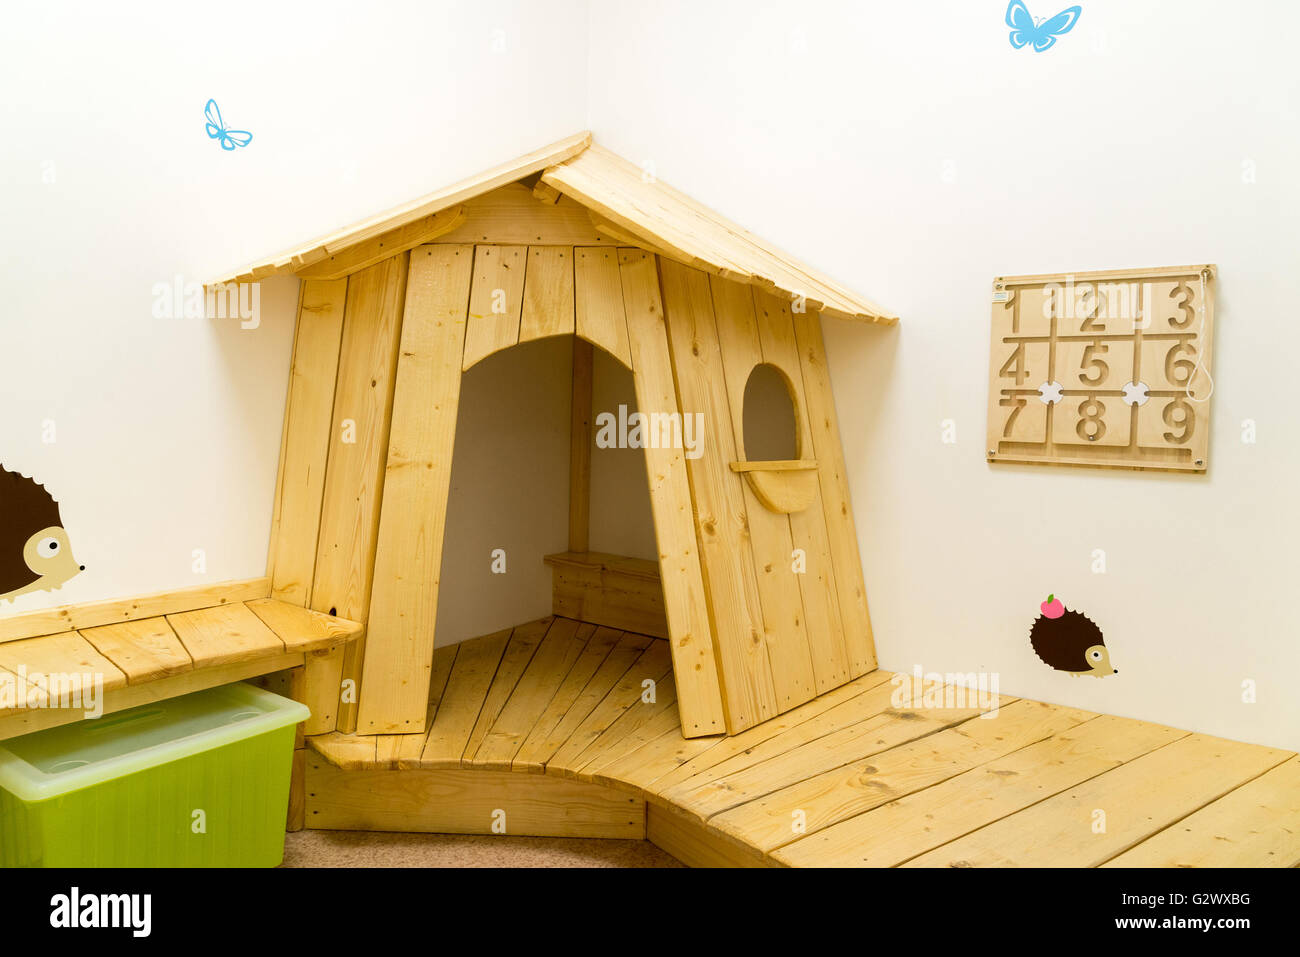 Sala giochi per bambini con la casa e dei giocattoli educativi Foto Stock